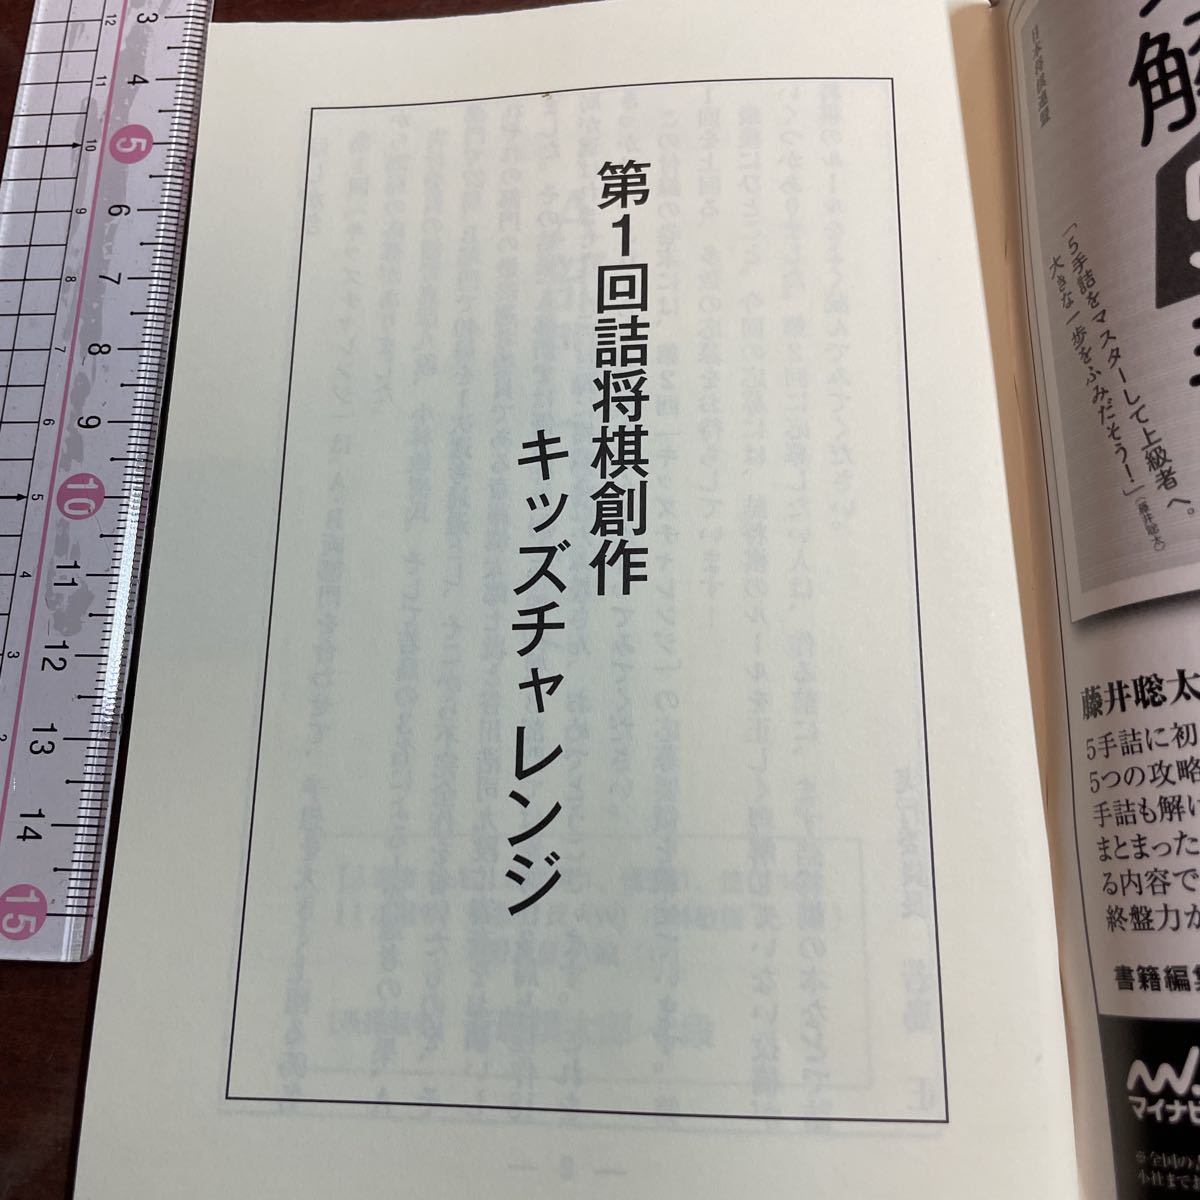  shogi мир дополнение [. shogi сборник произведений ] no. 1 раз . shogi произведение Kids "Challenge" будущее. глициния .. futoshi. ..!? ученик начальной школы ... сила произведение 33. извещение . мир 2 год 3 месяц номер 